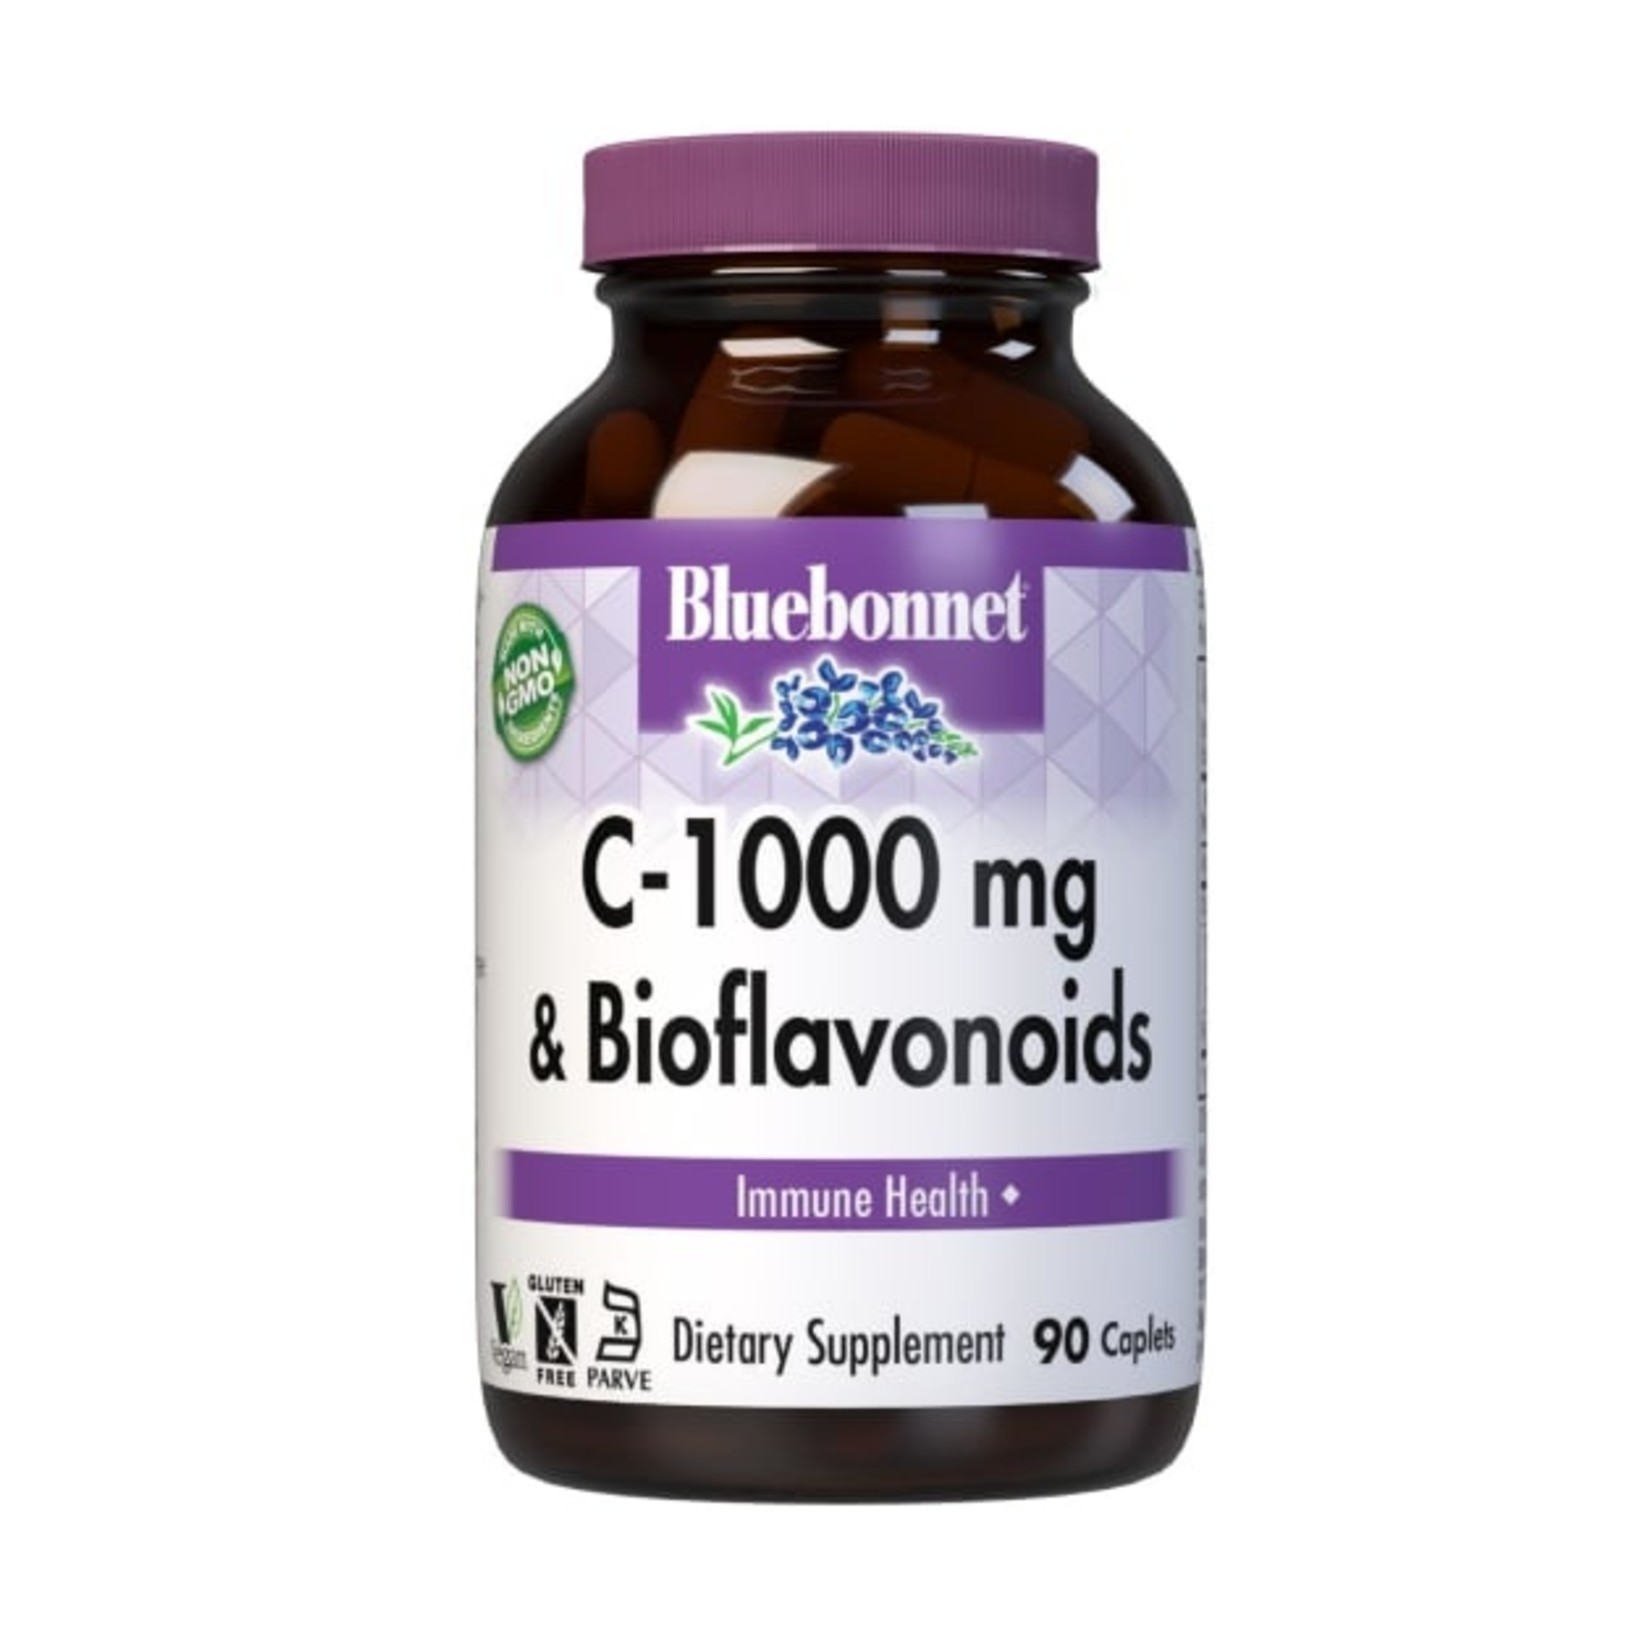 Bluebonnet Bluebonnet - Vitamin C 1000 mg Plus Bioflavonoids - 90 Capsules